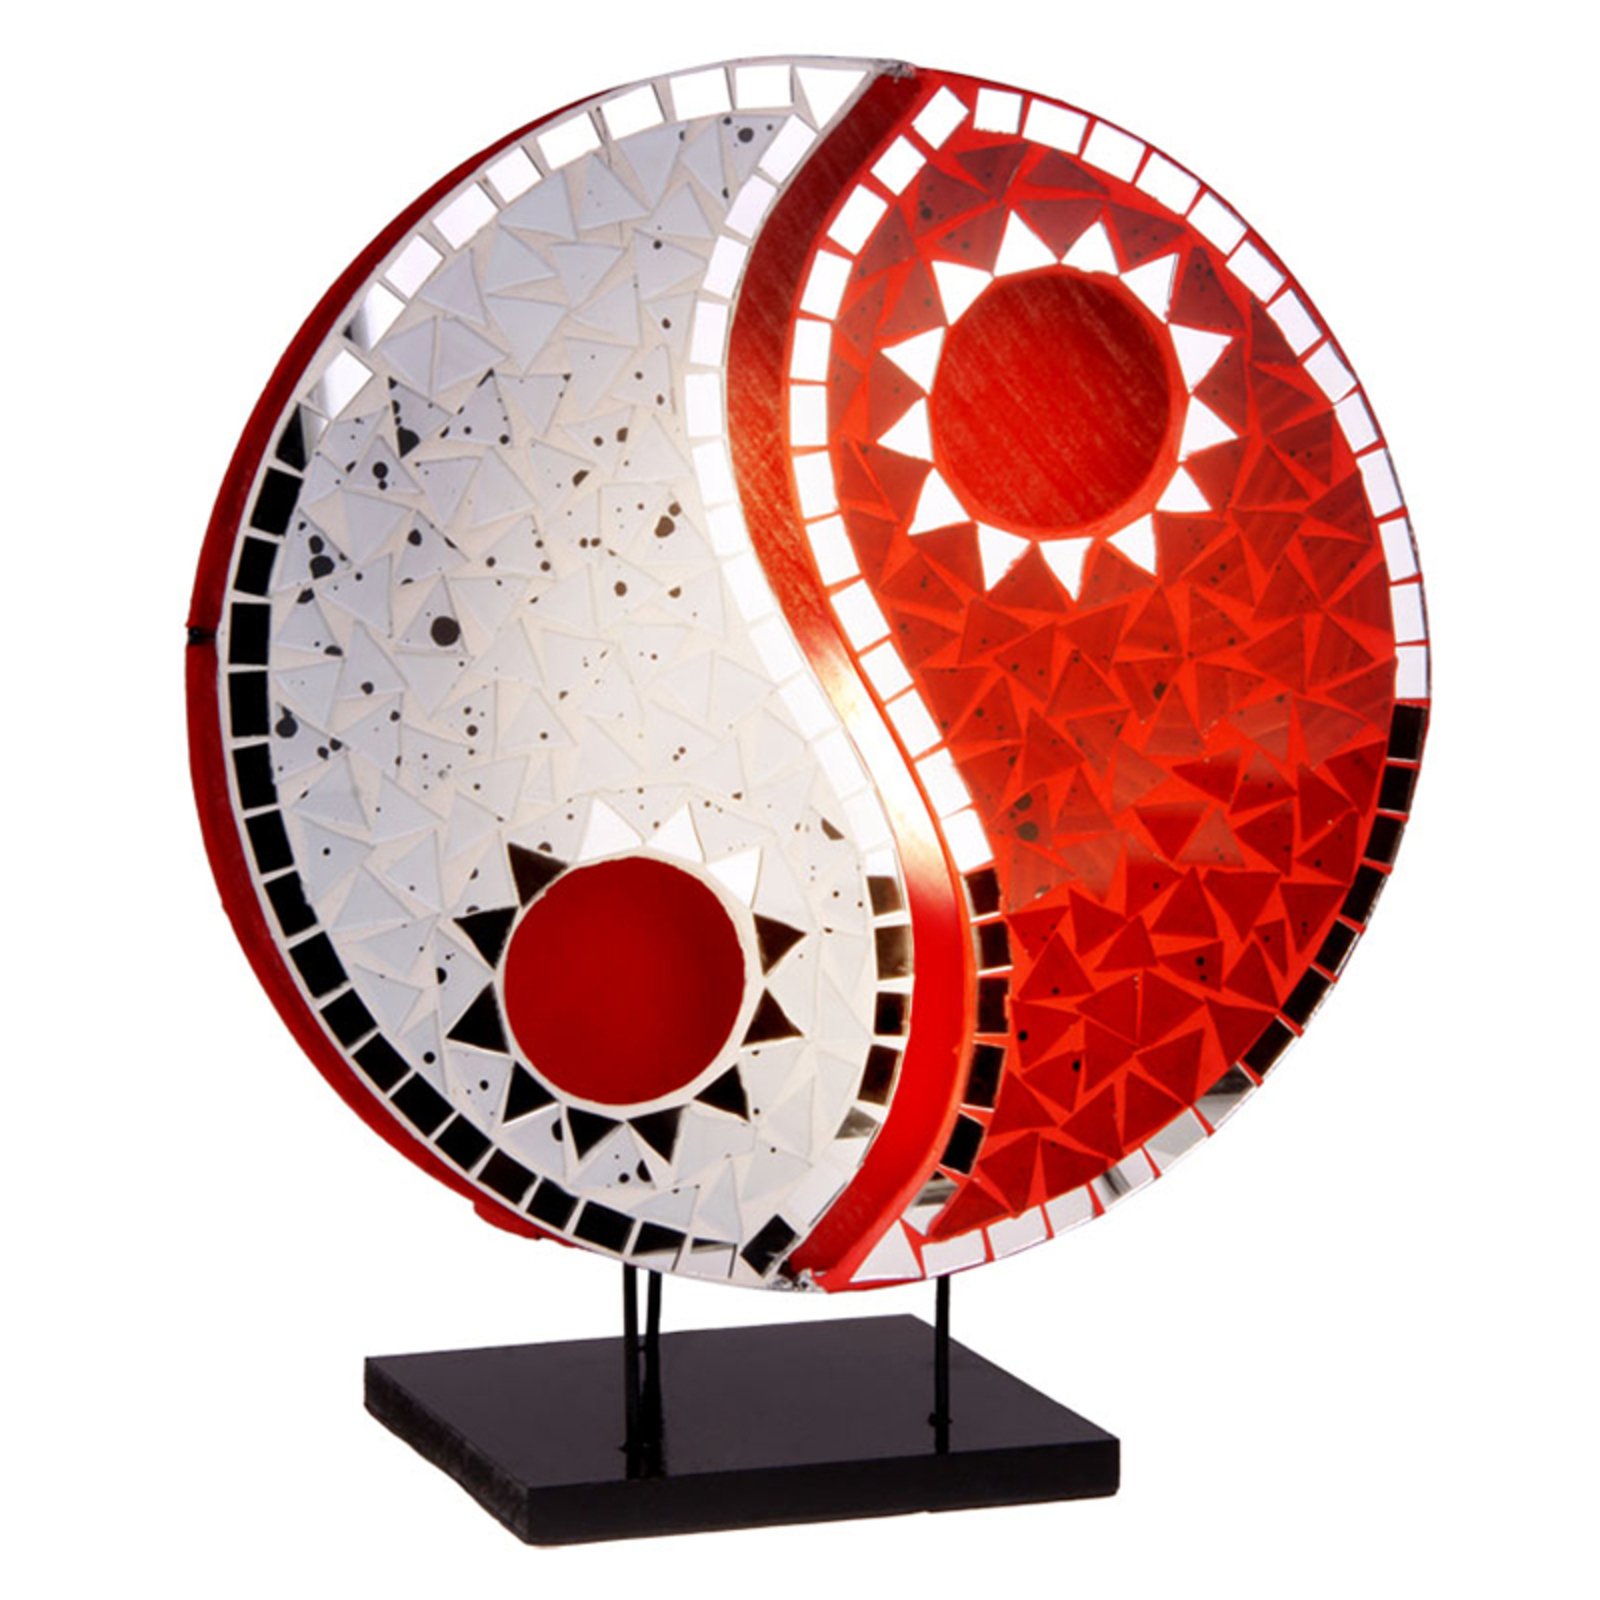 Bordslampa Ying Yang med mosaikspegelstenar röd